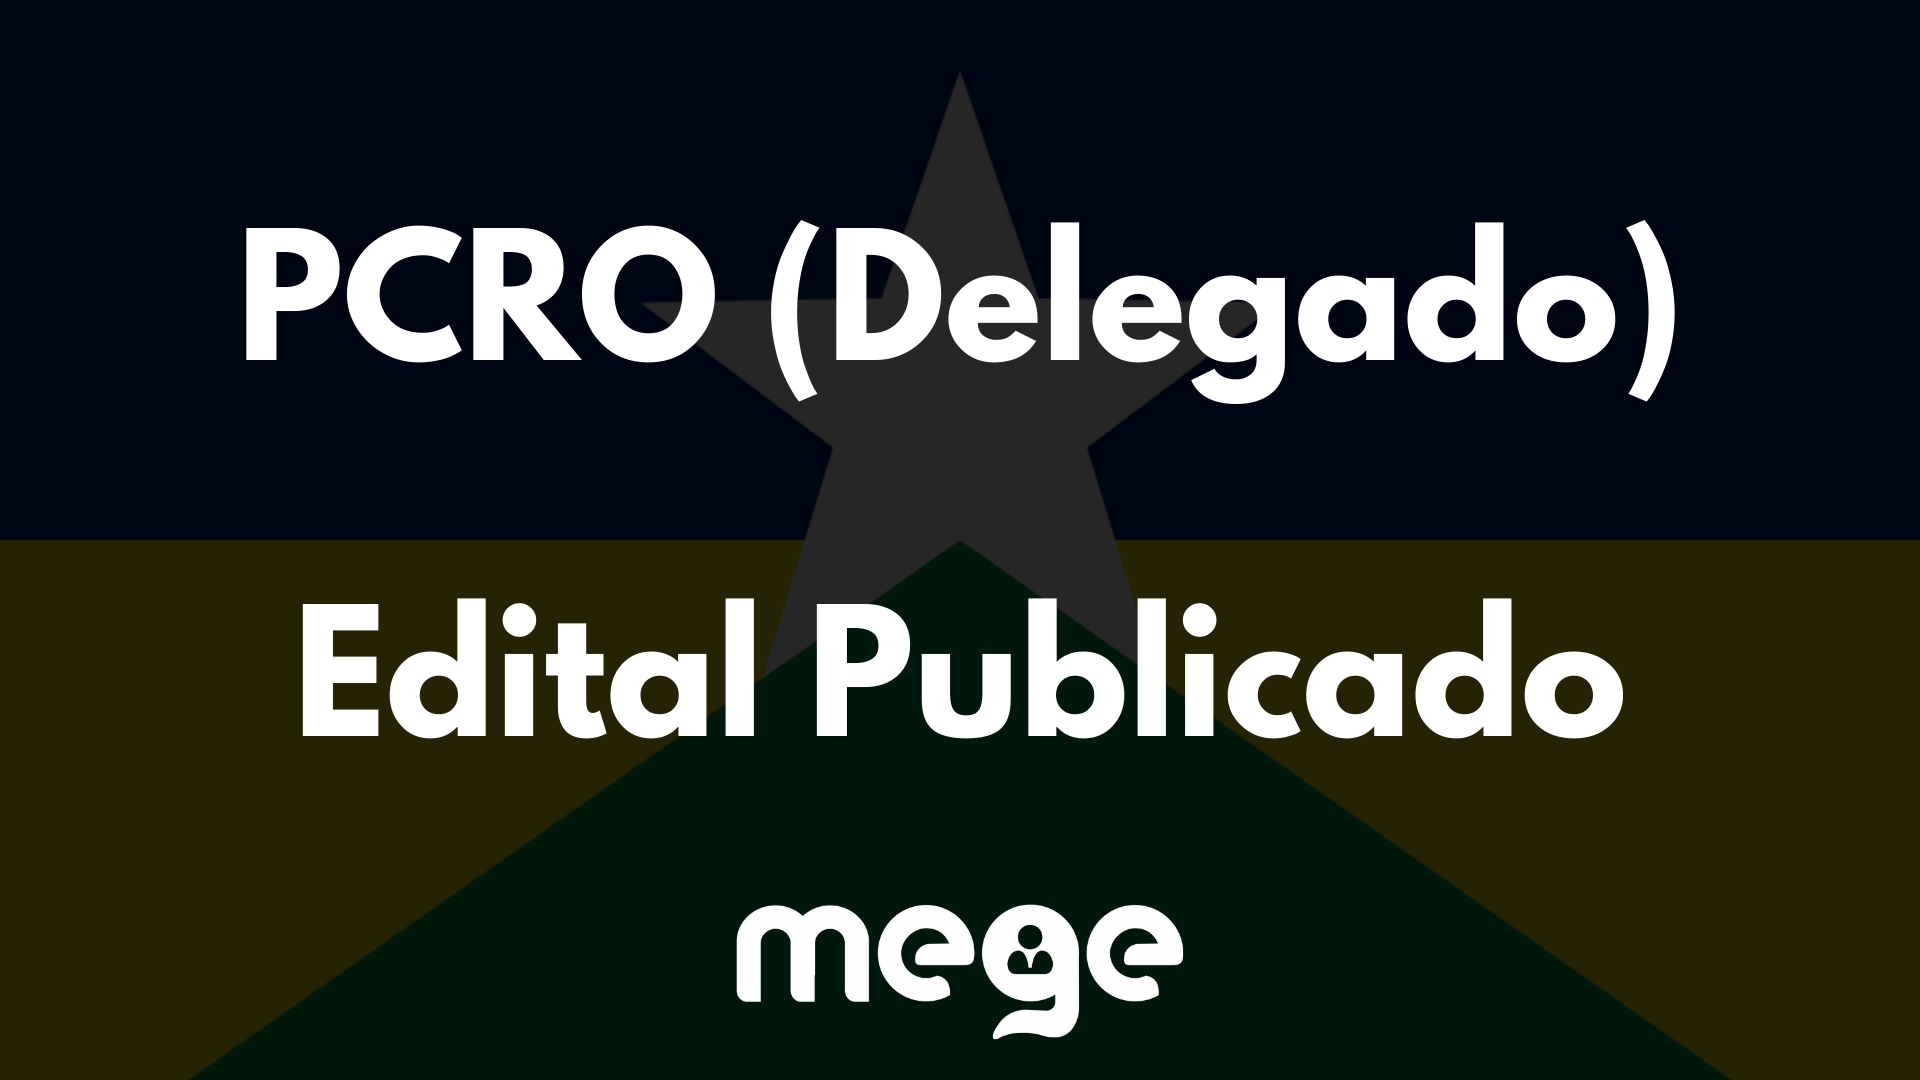 EDITAL PUBLICADO: PCRO DELEGADO 2022